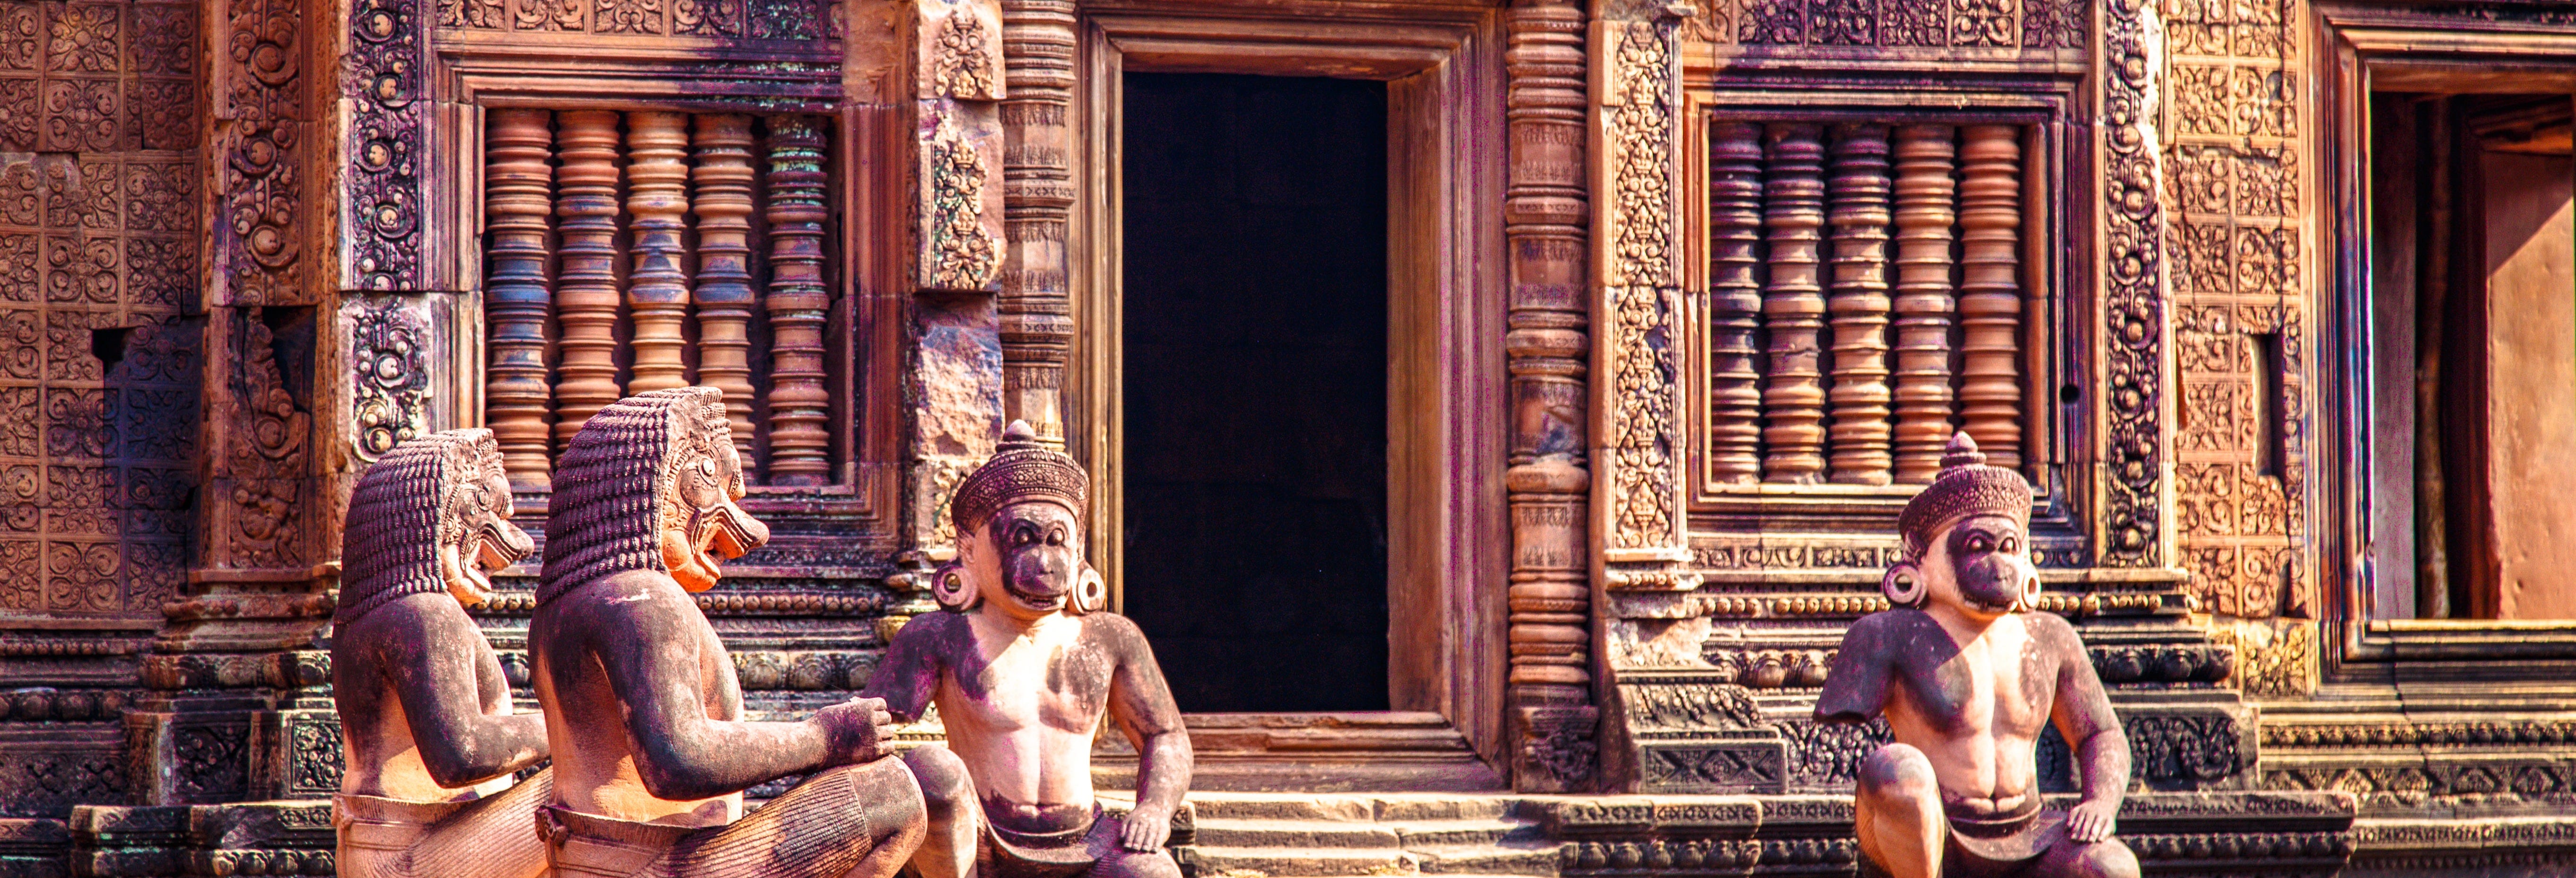 Banteay Srei & Preah Khan Temples Tour